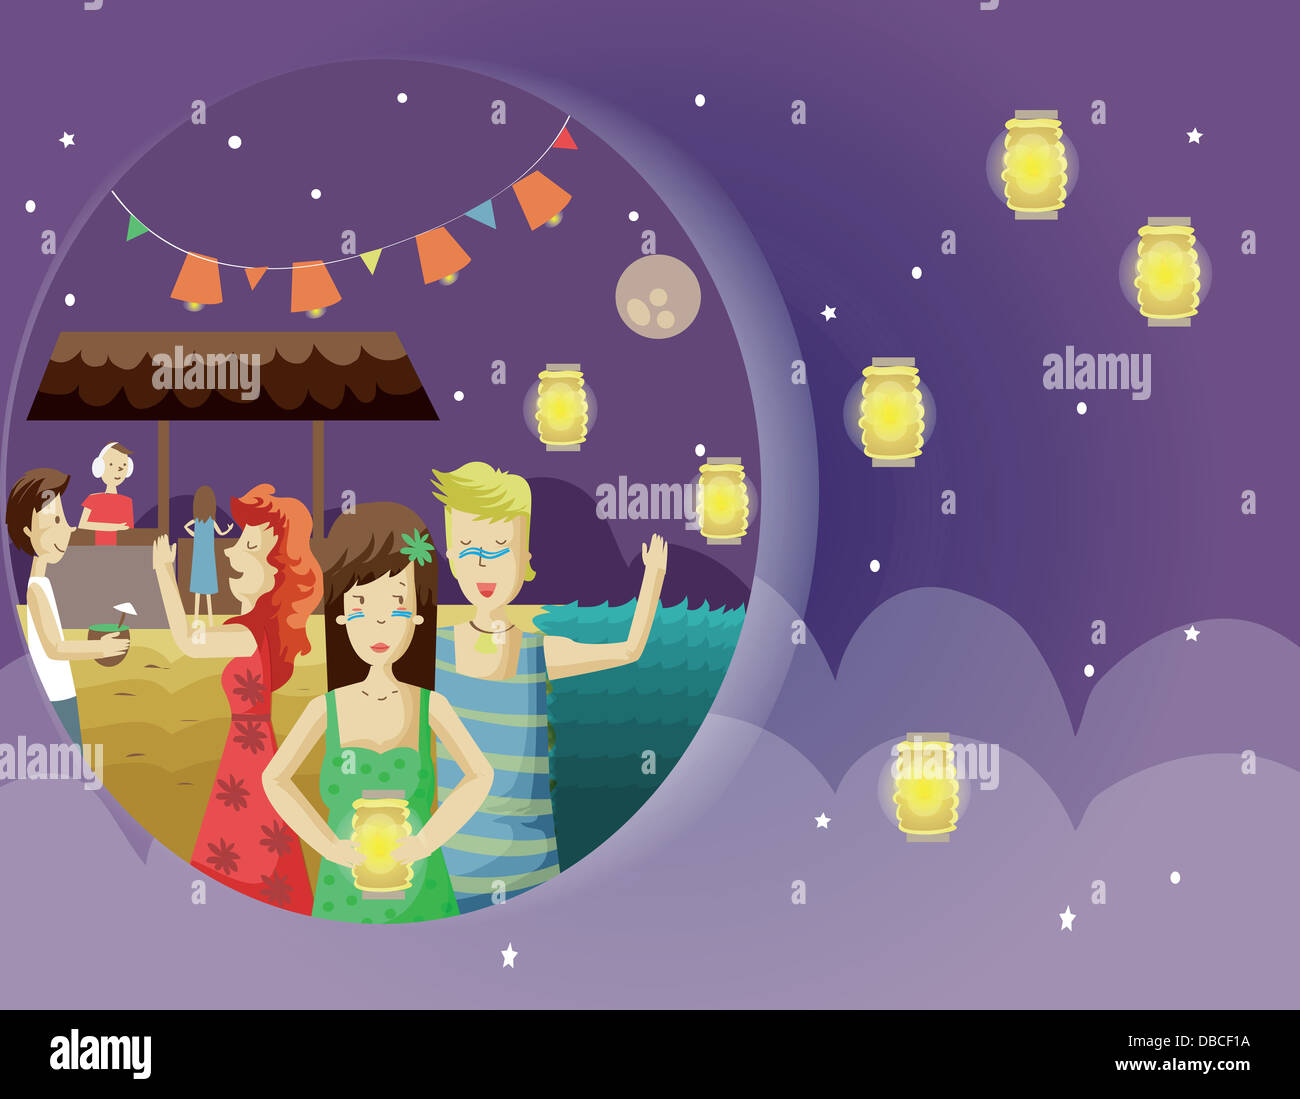 Illustrazione delle persone celebrare la festa delle lanterne di notte Foto Stock